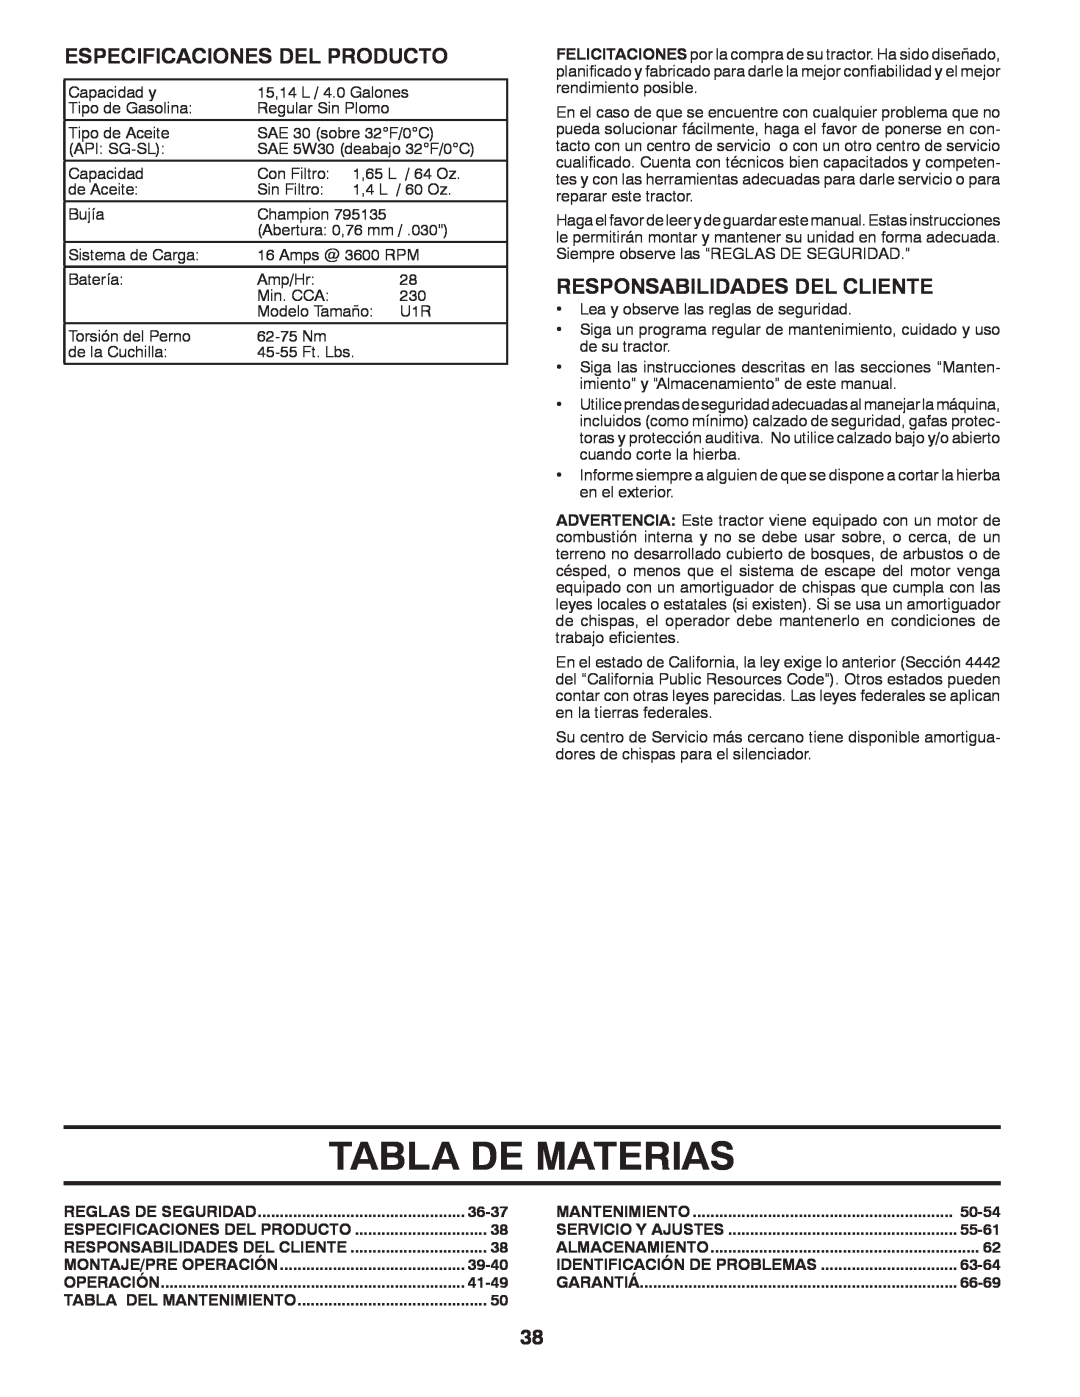 Husqvarna GT48XLSi warranty Tabla De Materias, Especificaciones Del Producto, Responsabilidades Del Cliente 